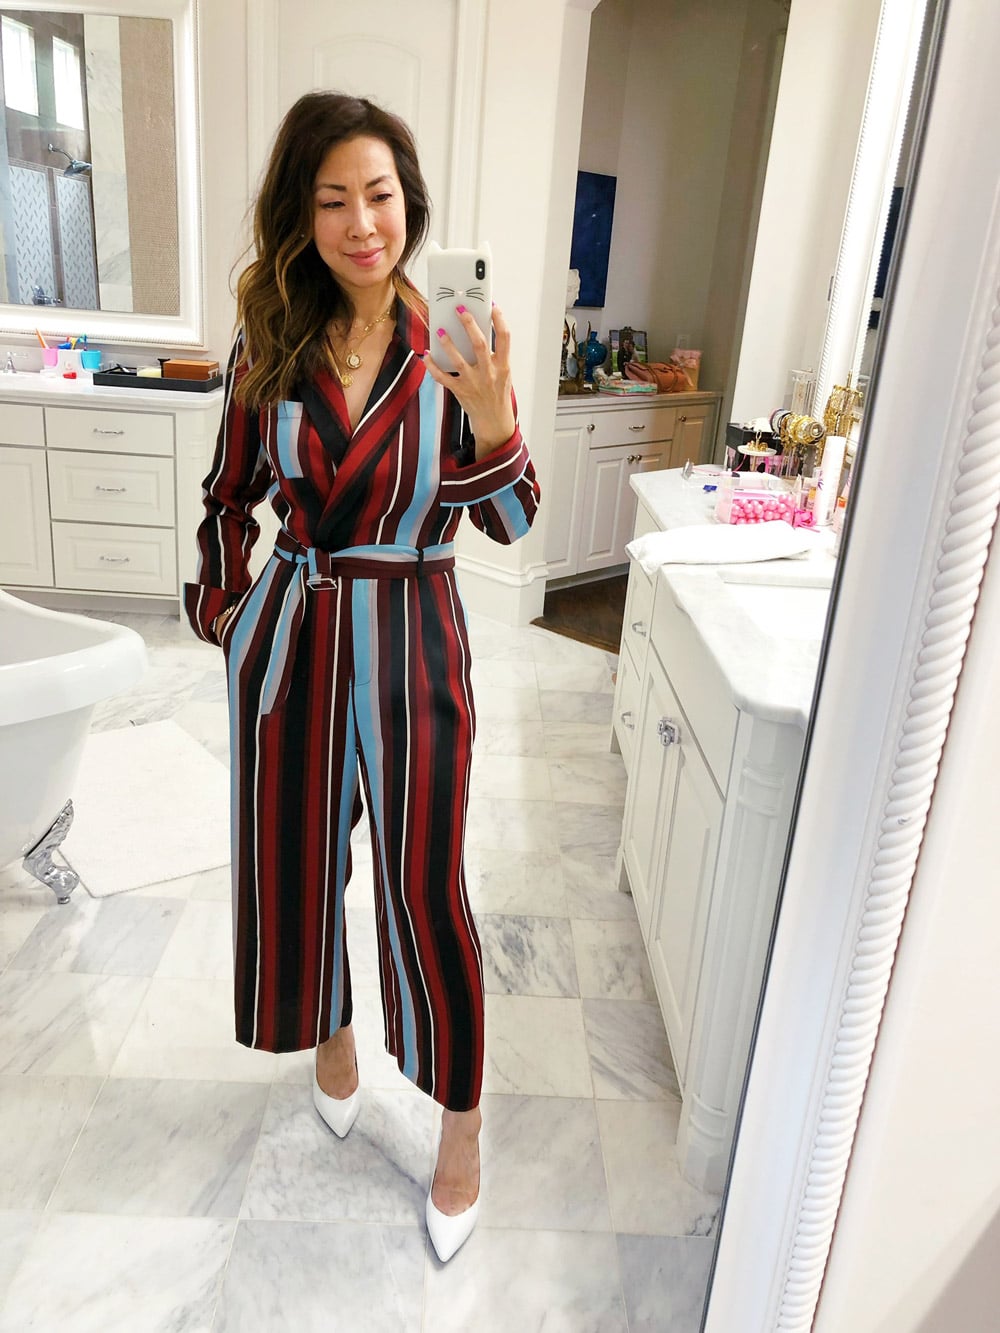 nordstrom anniversary sale 2018 dressing room selfies